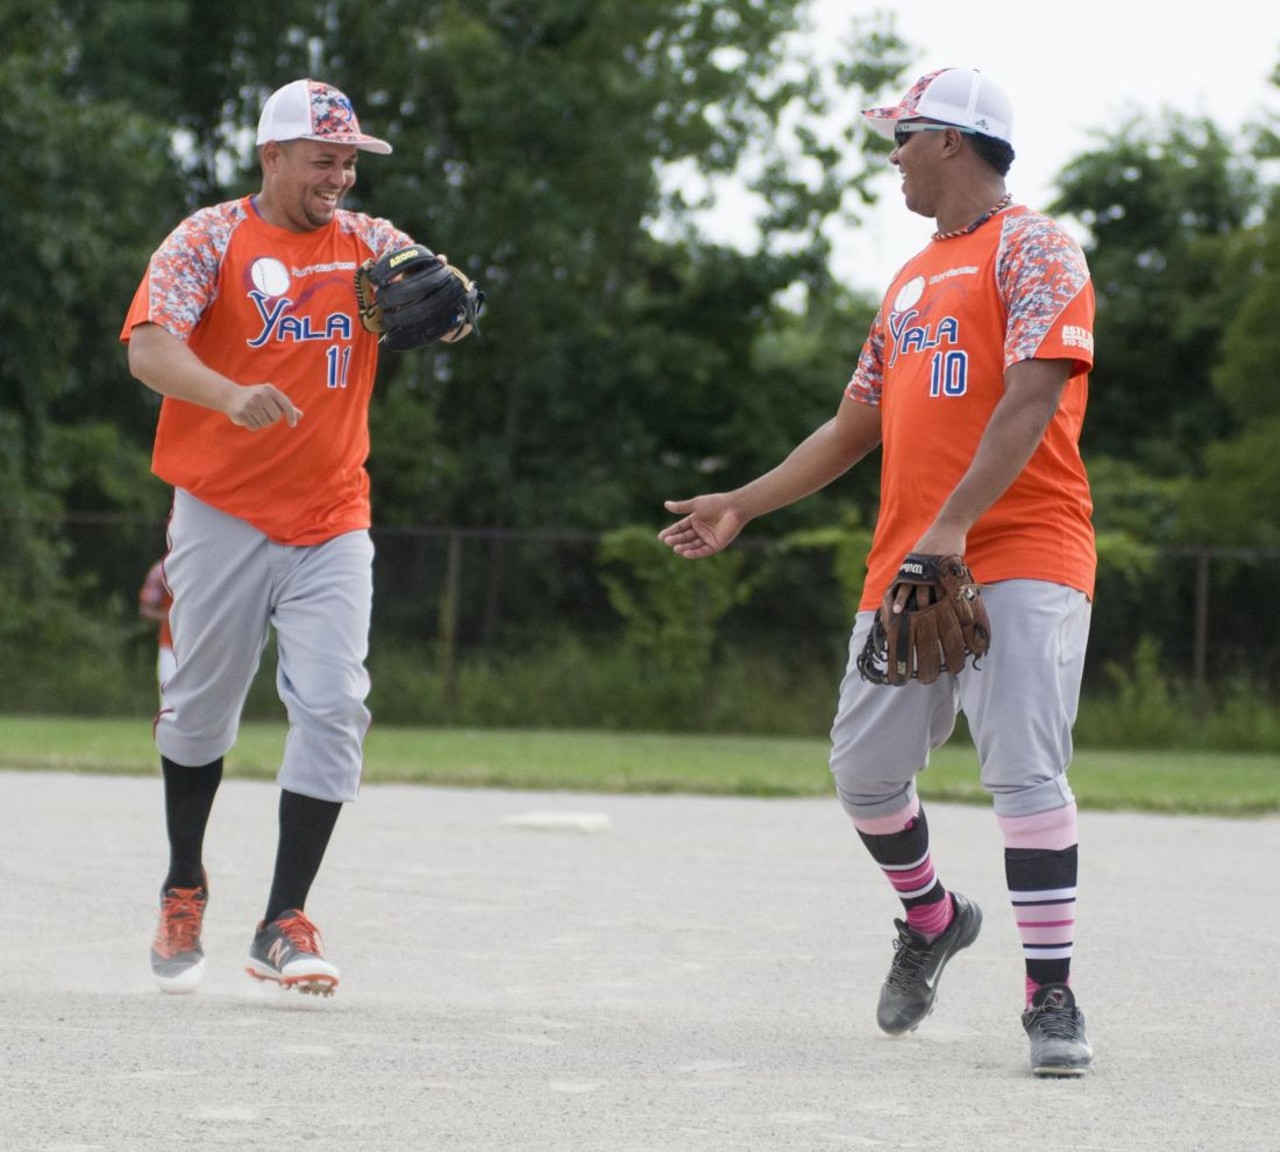 Photos from Detroit's Caribbean softball league